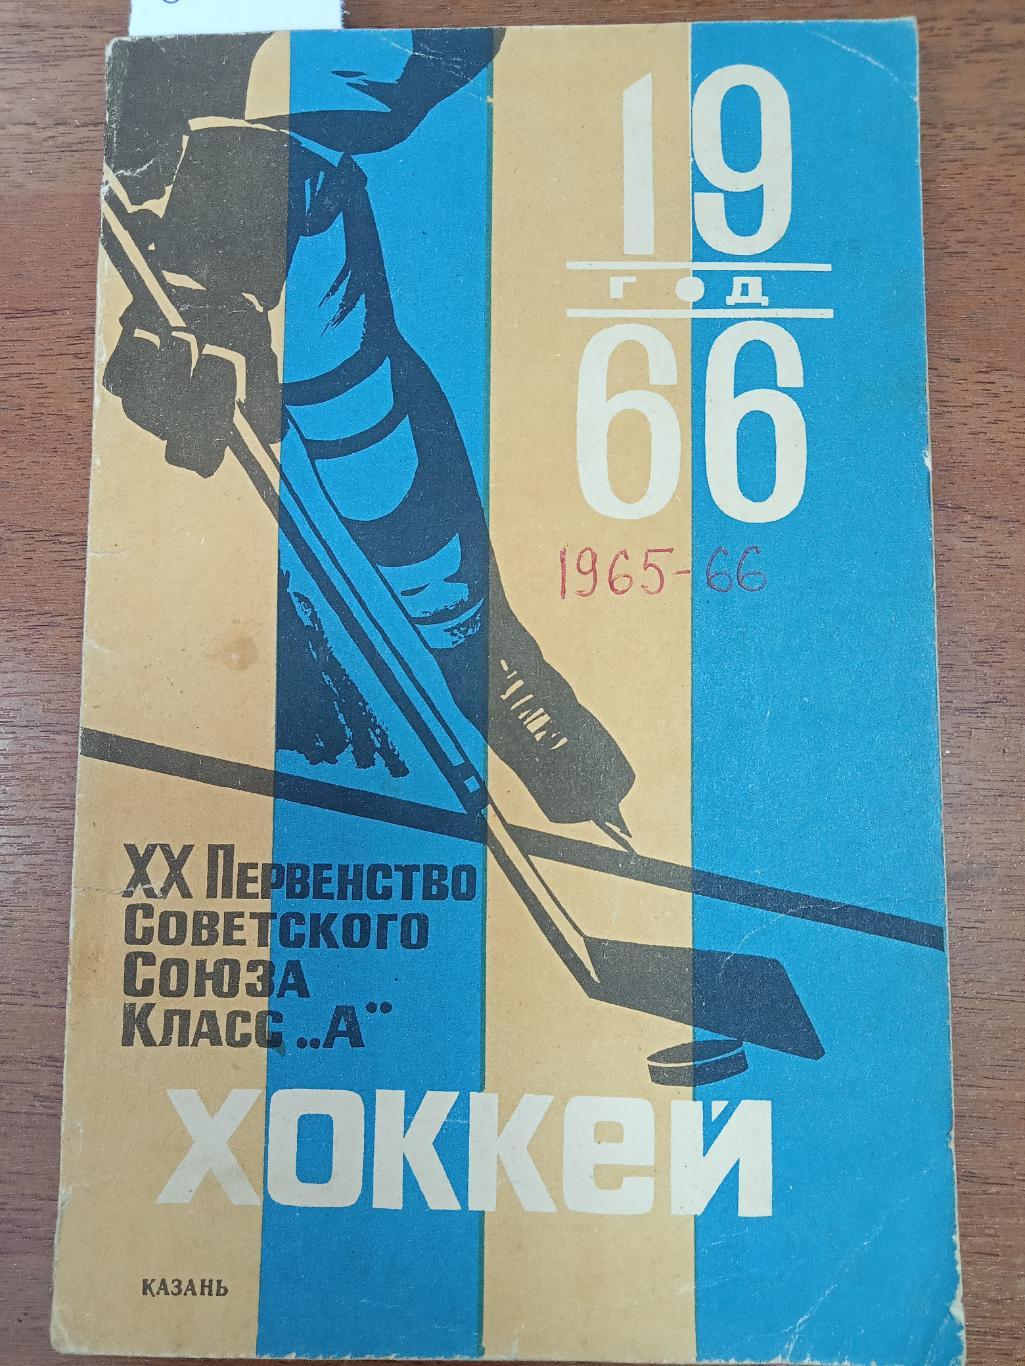 Хоккей. Календарь справочник. Казань. 1965-1966.